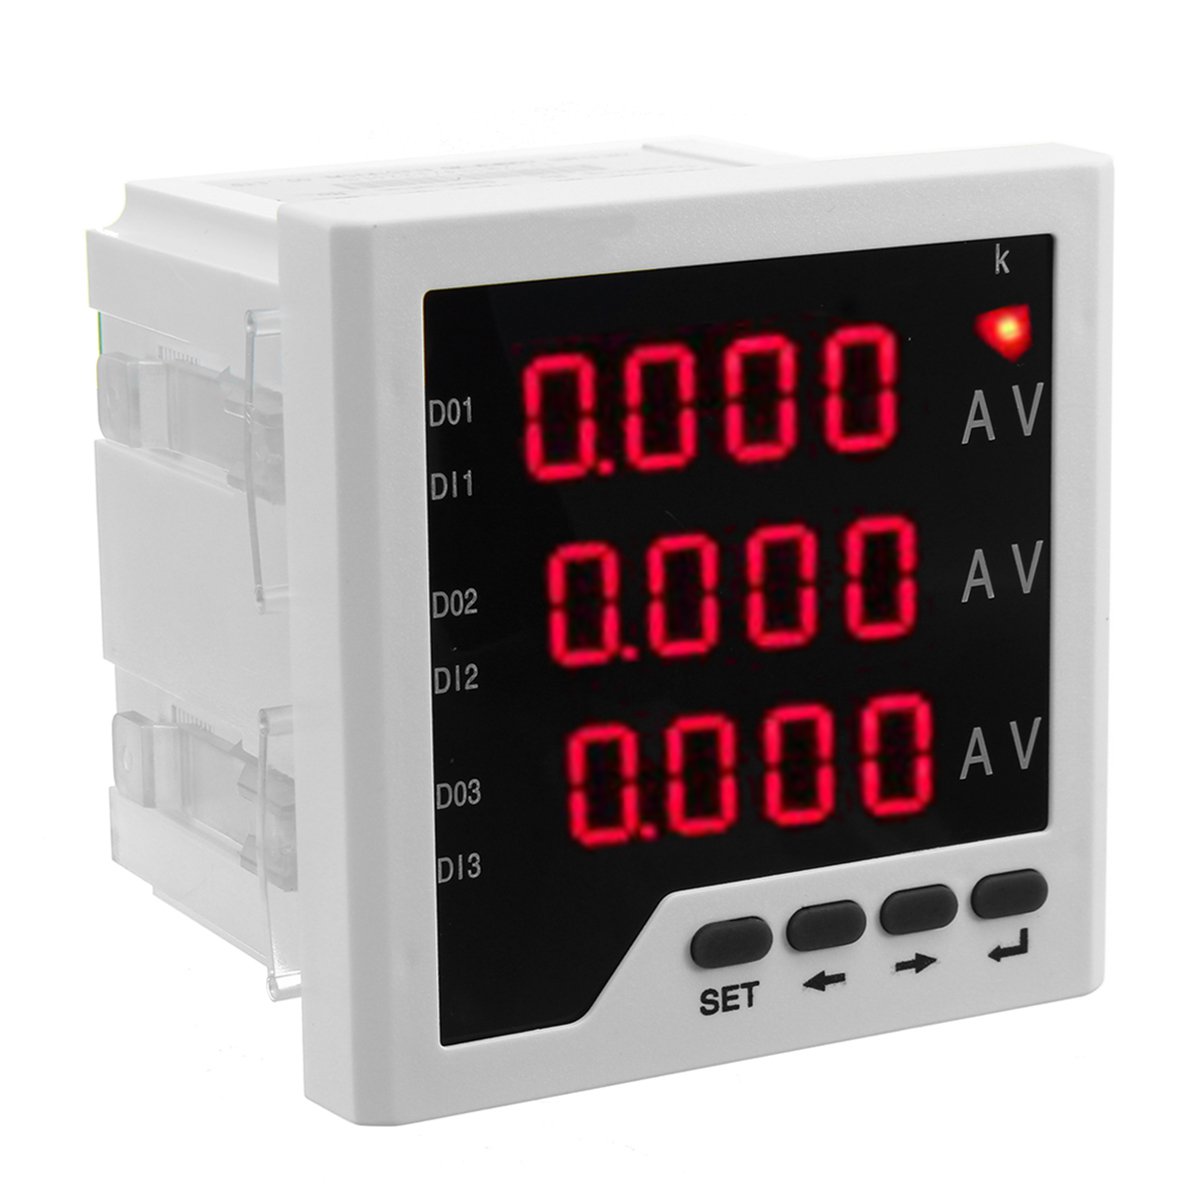 

ZM194-IU93 Digital Display Three-phase Digital Multimeter Voltmeter Ammeter